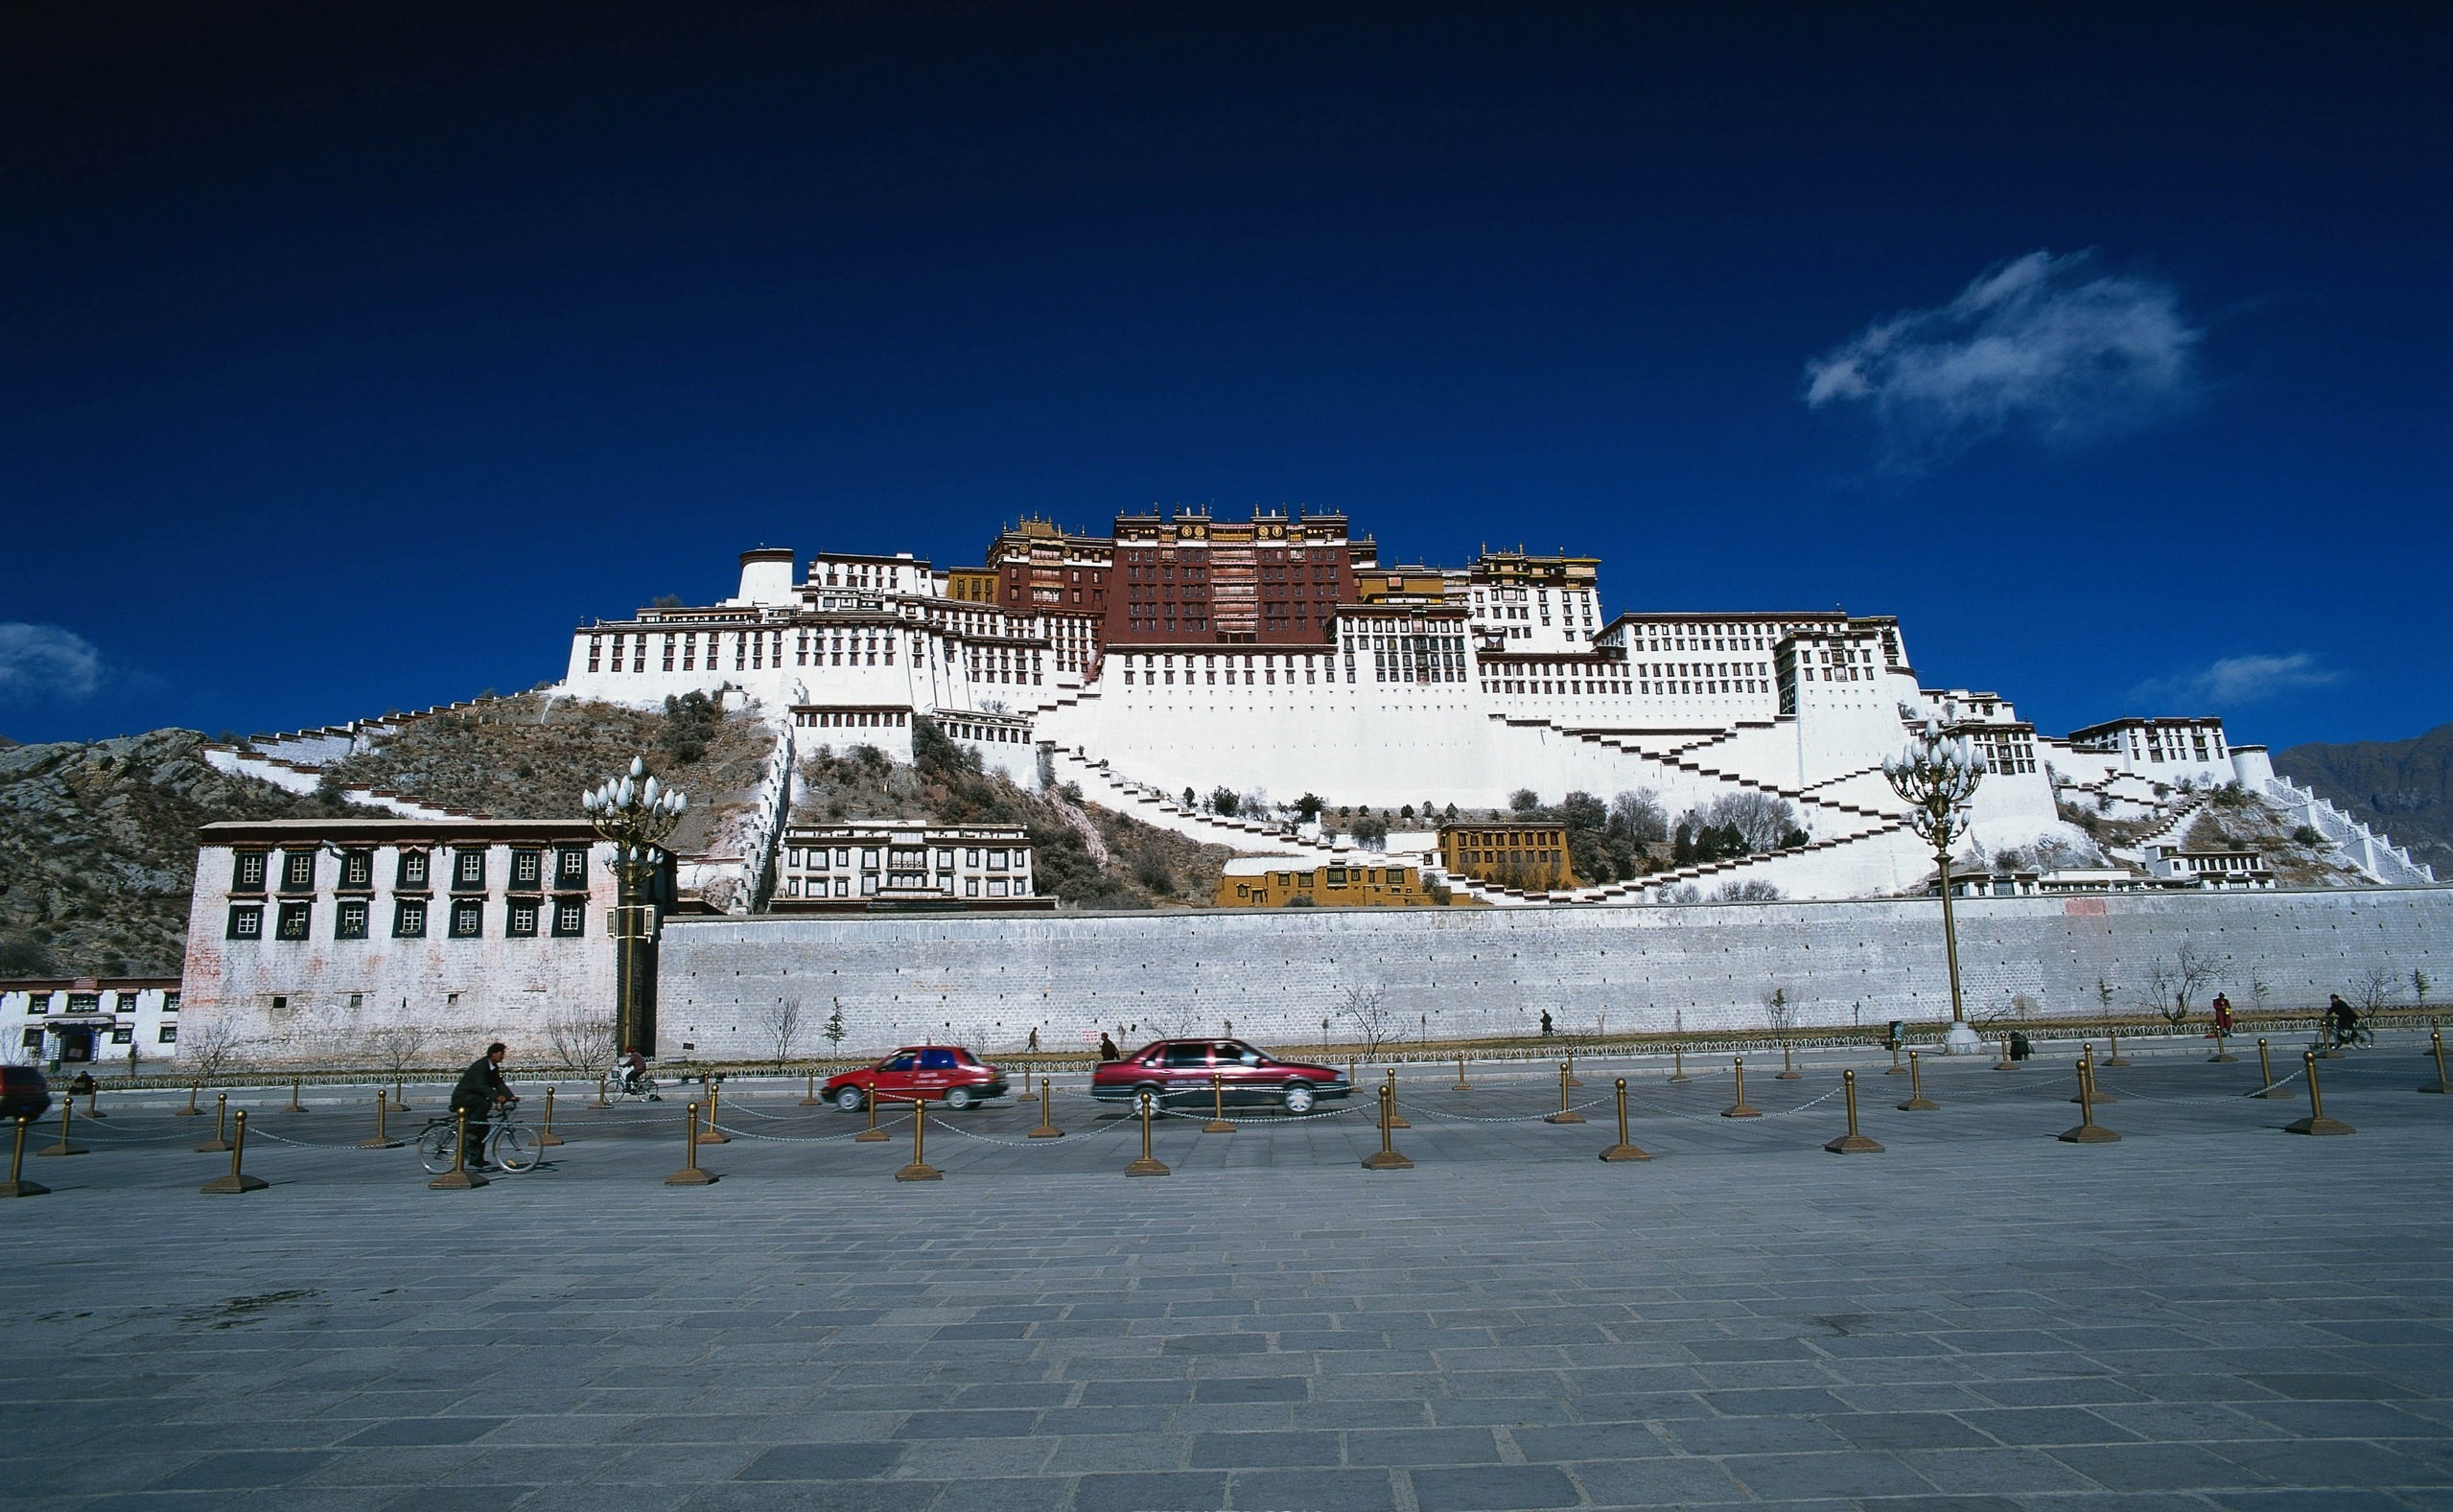  The Potala Palace, China